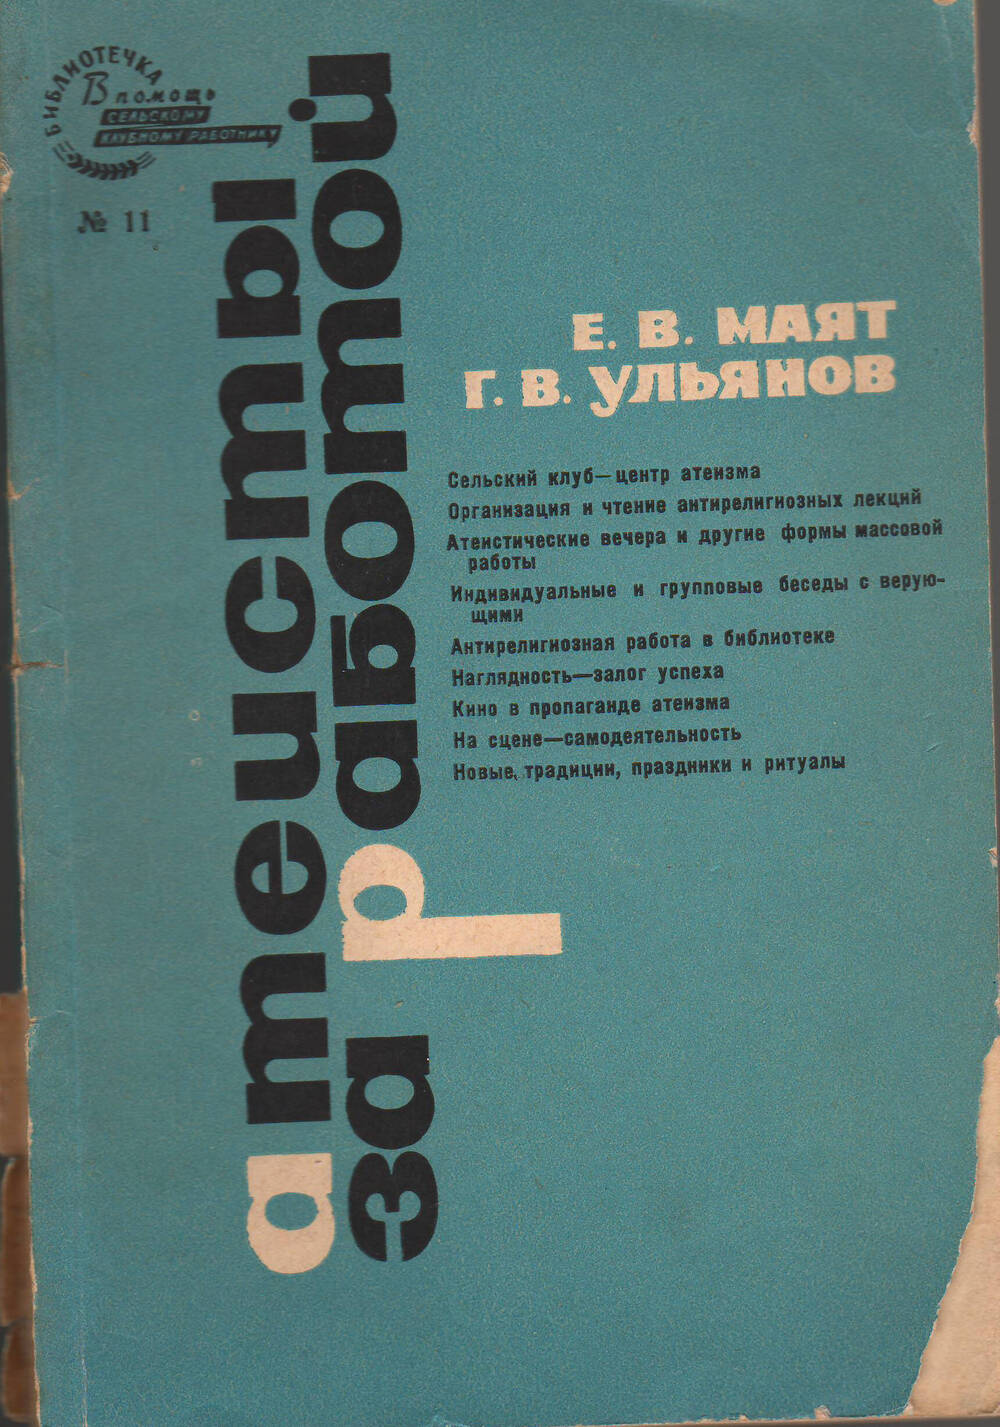 Е.В.Маят, Г.В.Ульянов. Брошюра Атеисты за работой. 1966 год.